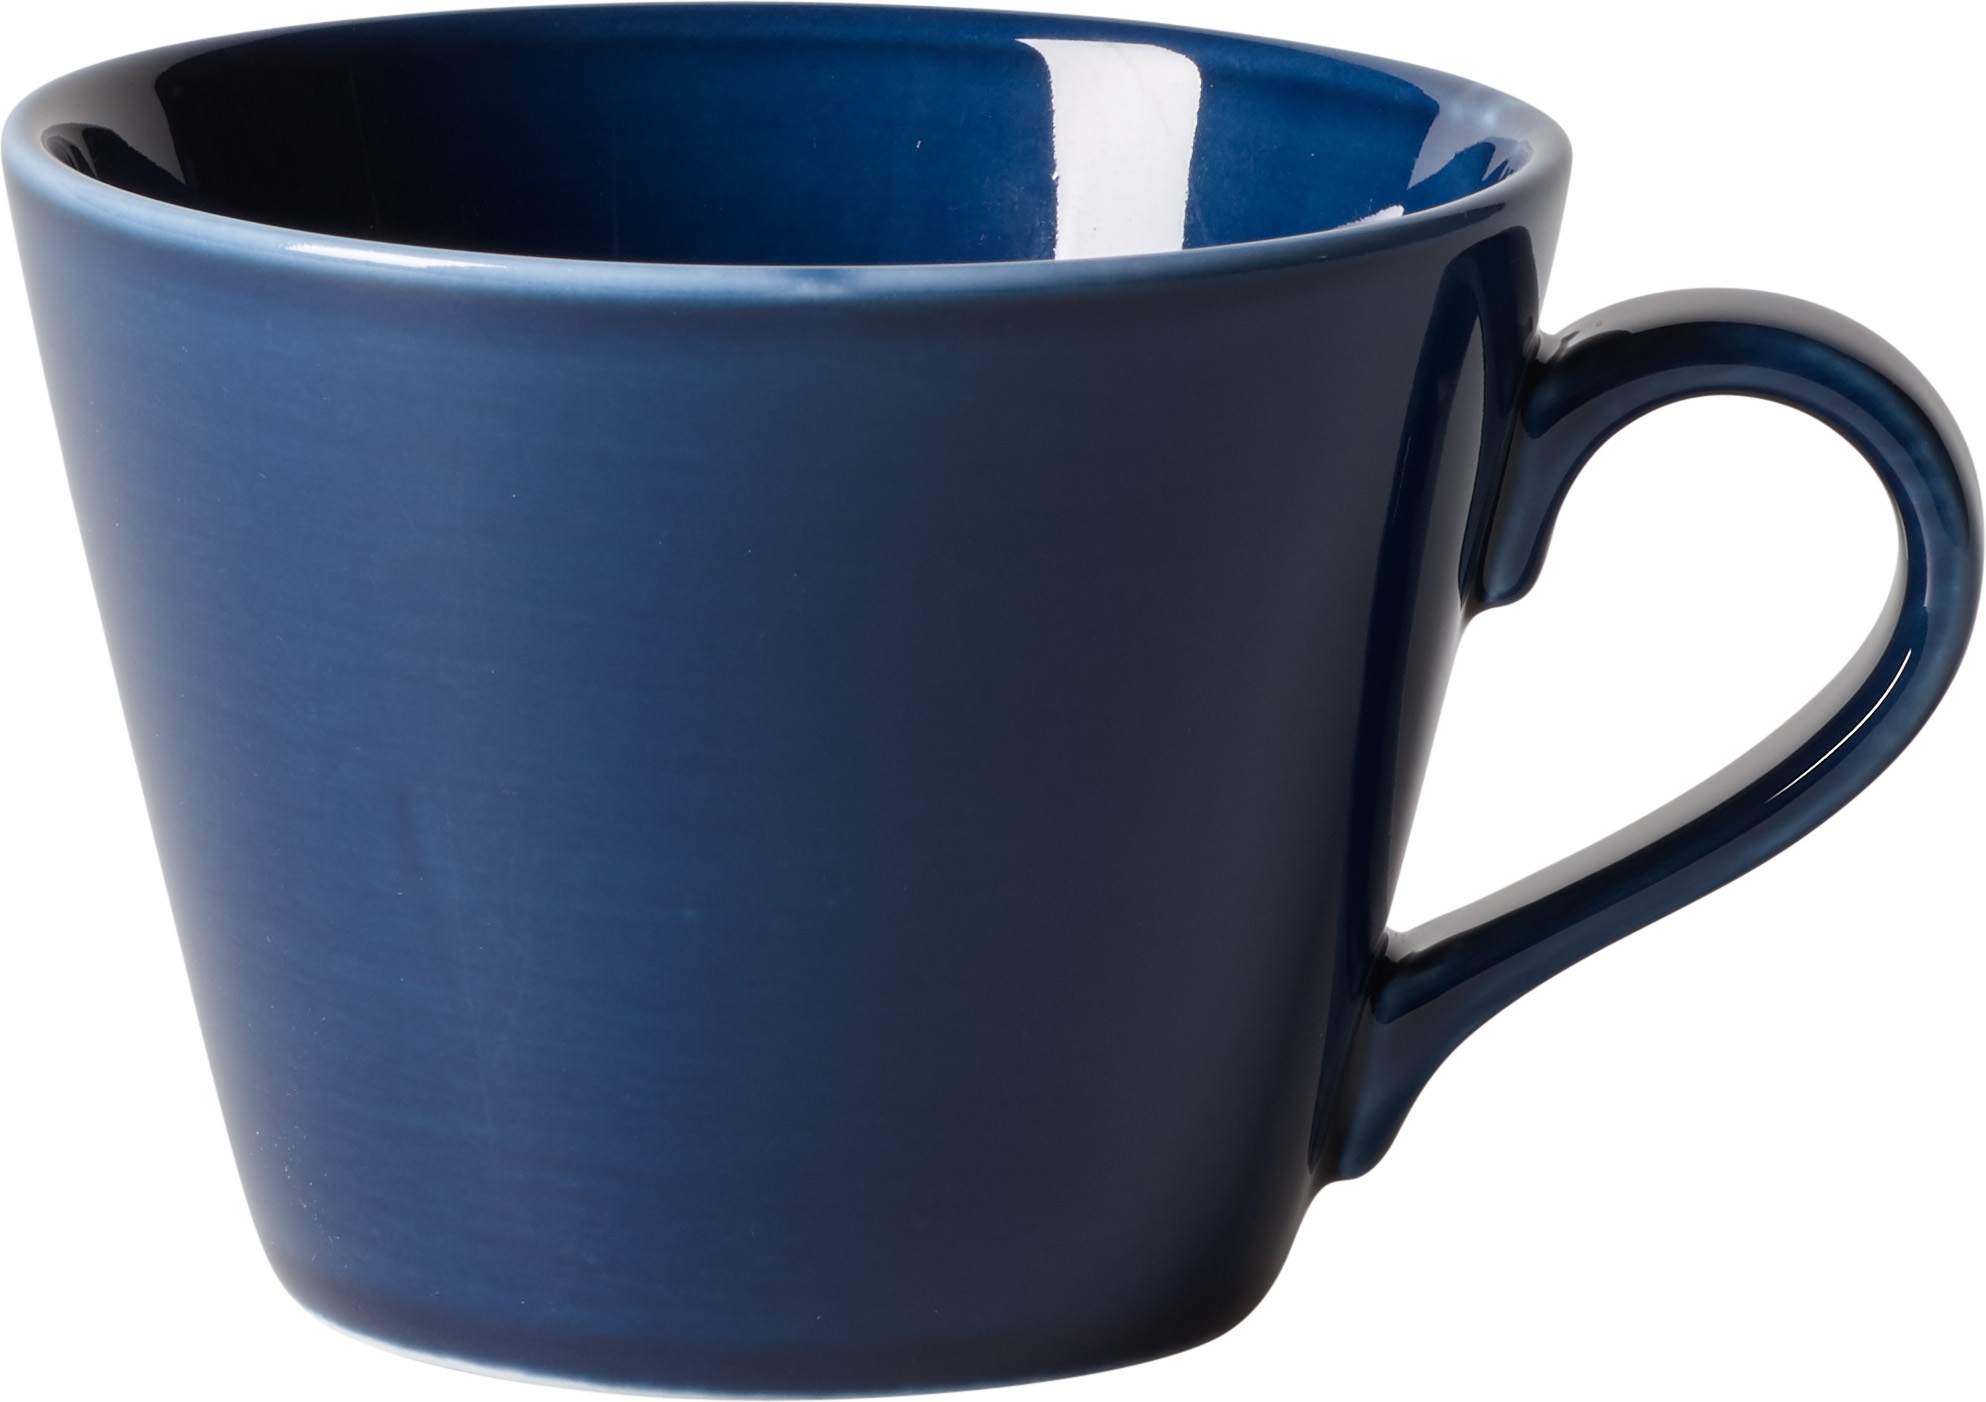 Ceasca pentru cafea like. by Villeroy & Boch Organic Dark Blue 0.27 litri like. by Villeroy & Boch pret redus imagine 2022